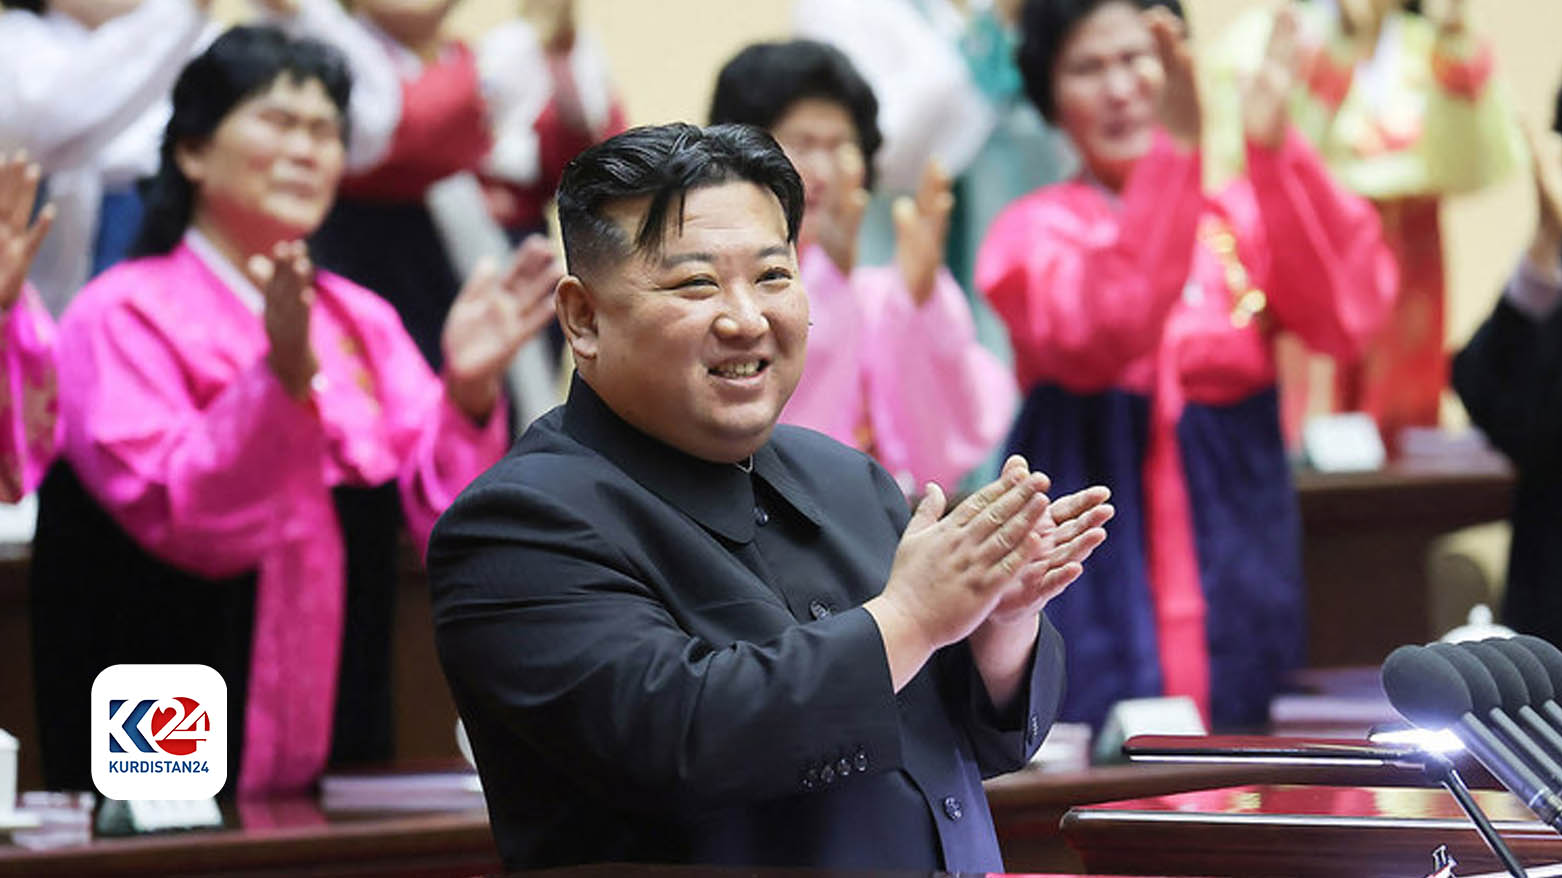 Kuzey Kore lideri Kim Jong-un, Ulusal Anneler Buluşması'nda